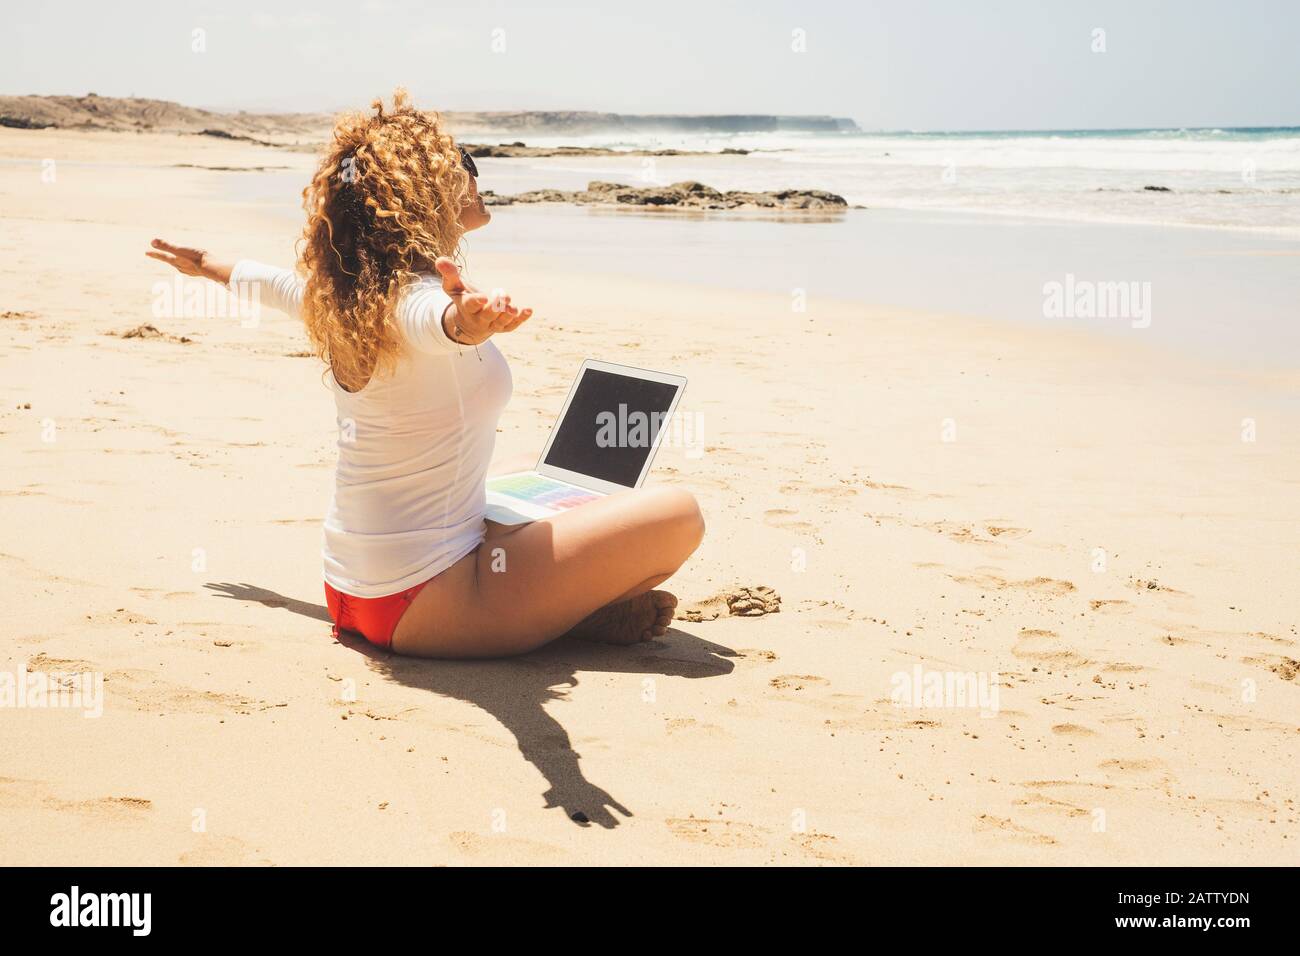 Bella donna felice e libera sedersi in spiaggia con computer portatile sulle gambe - concetto di nomade digitale e tecnologia moderna - Connected vigilia Foto Stock